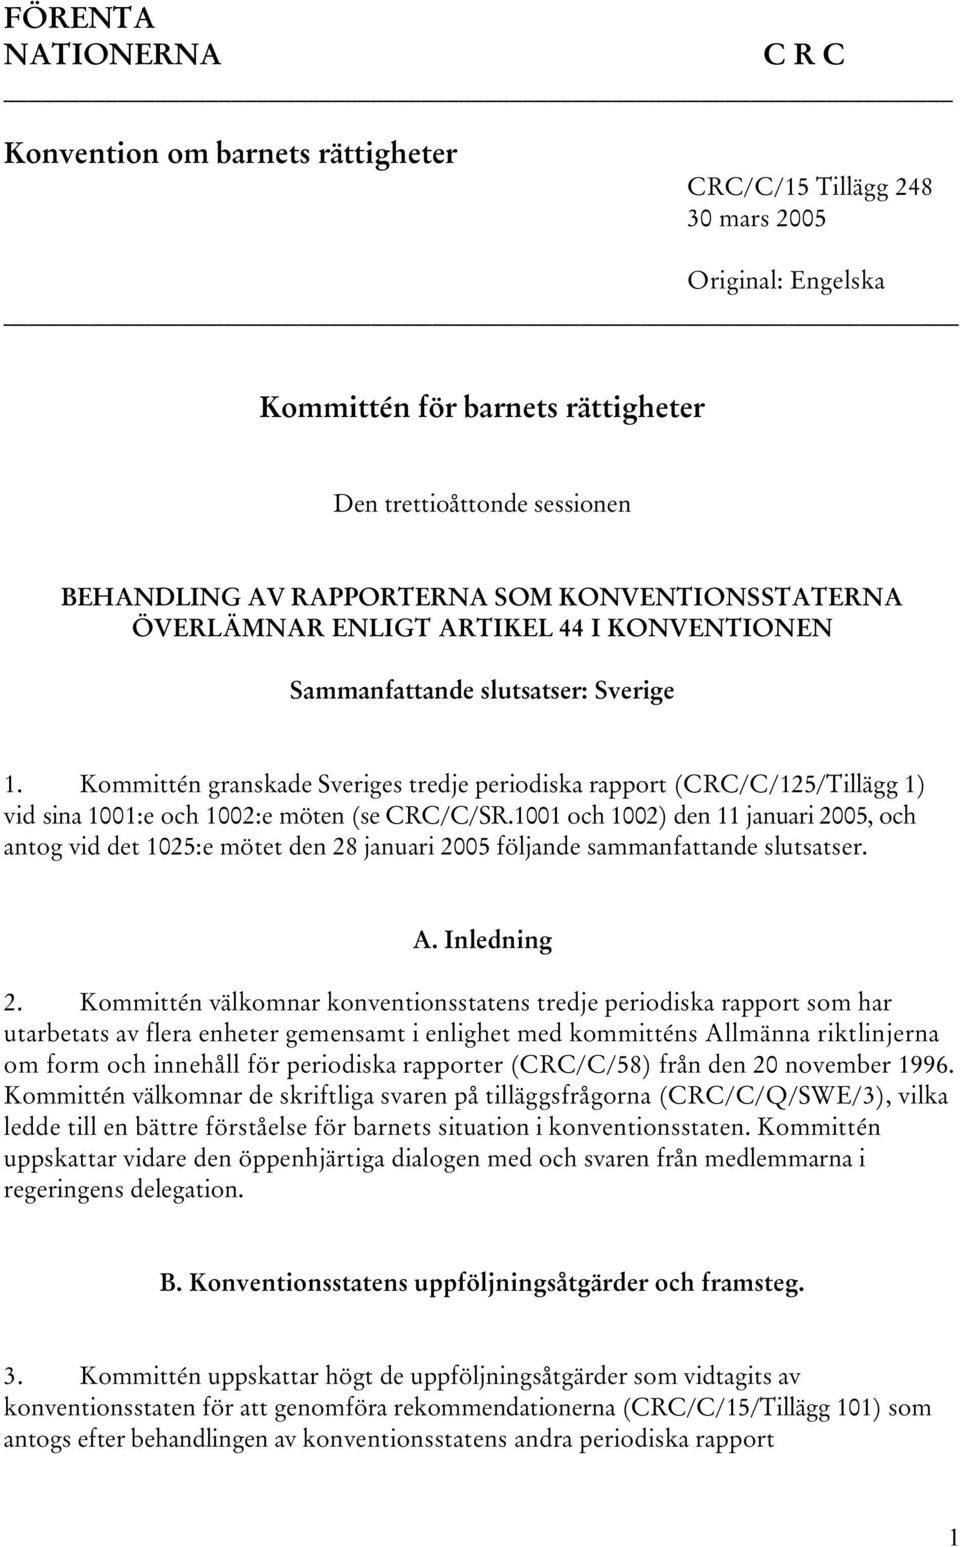 Kommittén granskade Sveriges tredje periodiska rapport (CRC/C/125/Tillägg 1) vid sina 1001:e och 1002:e möten (se CRC/C/SR.